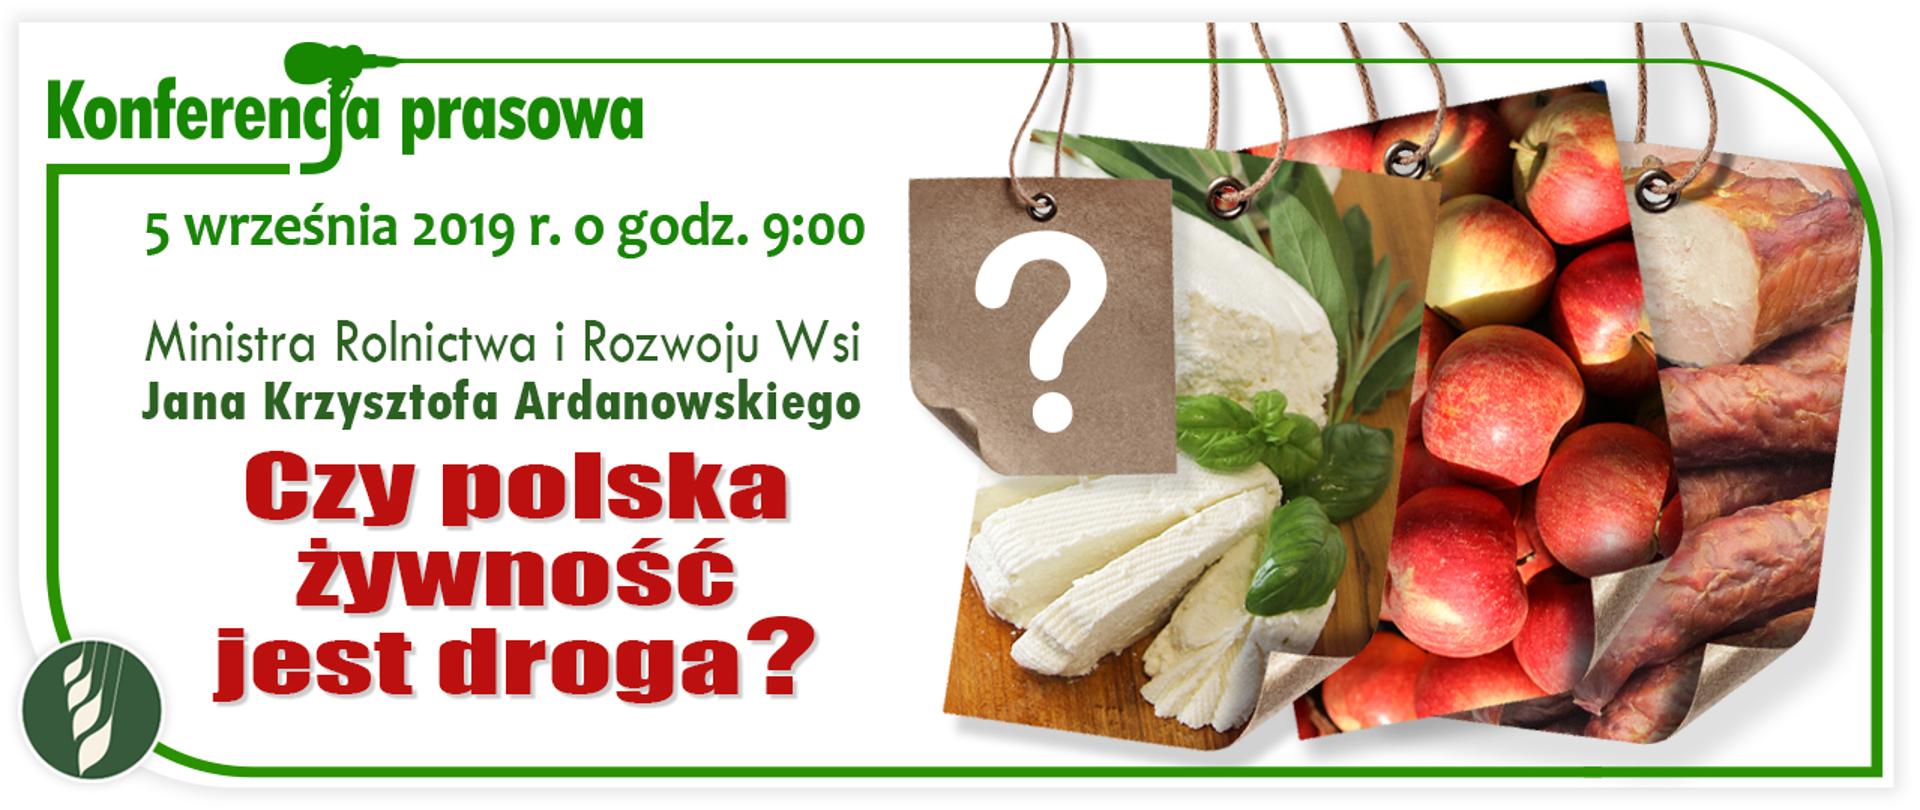 Czy polska żywność jest droga